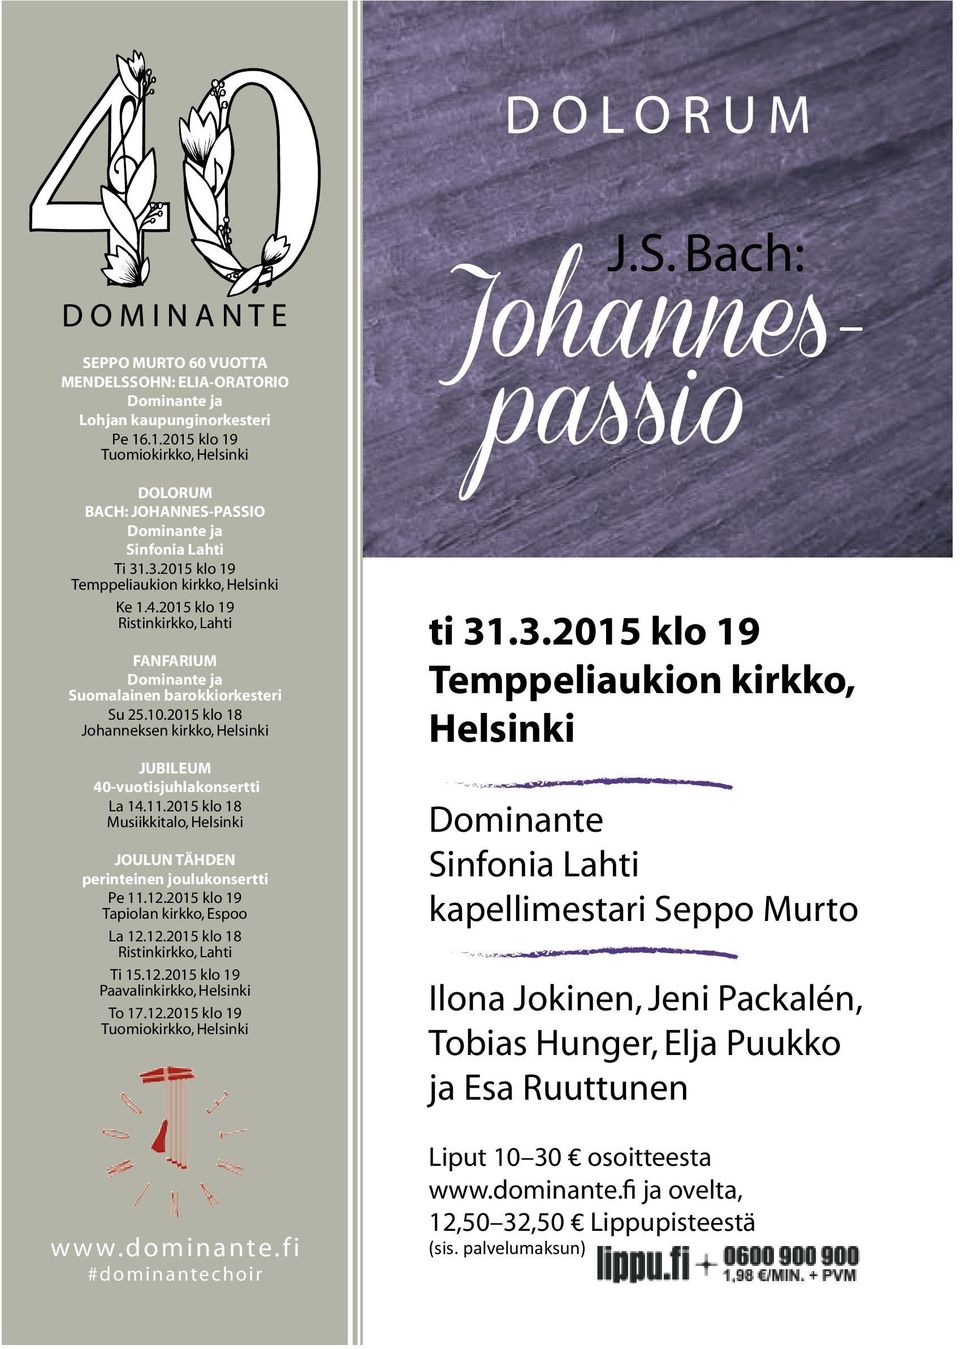 2015 klo 19 Ristinkirkko, Lahti FanFarium dominante ja Suomalainen barokkiorkesteri Su 25.10.2015 klo 18 Johanneksen kirkko, Helsinki JuBileum 40-vuotisjuhlakonsertti La 14.11.